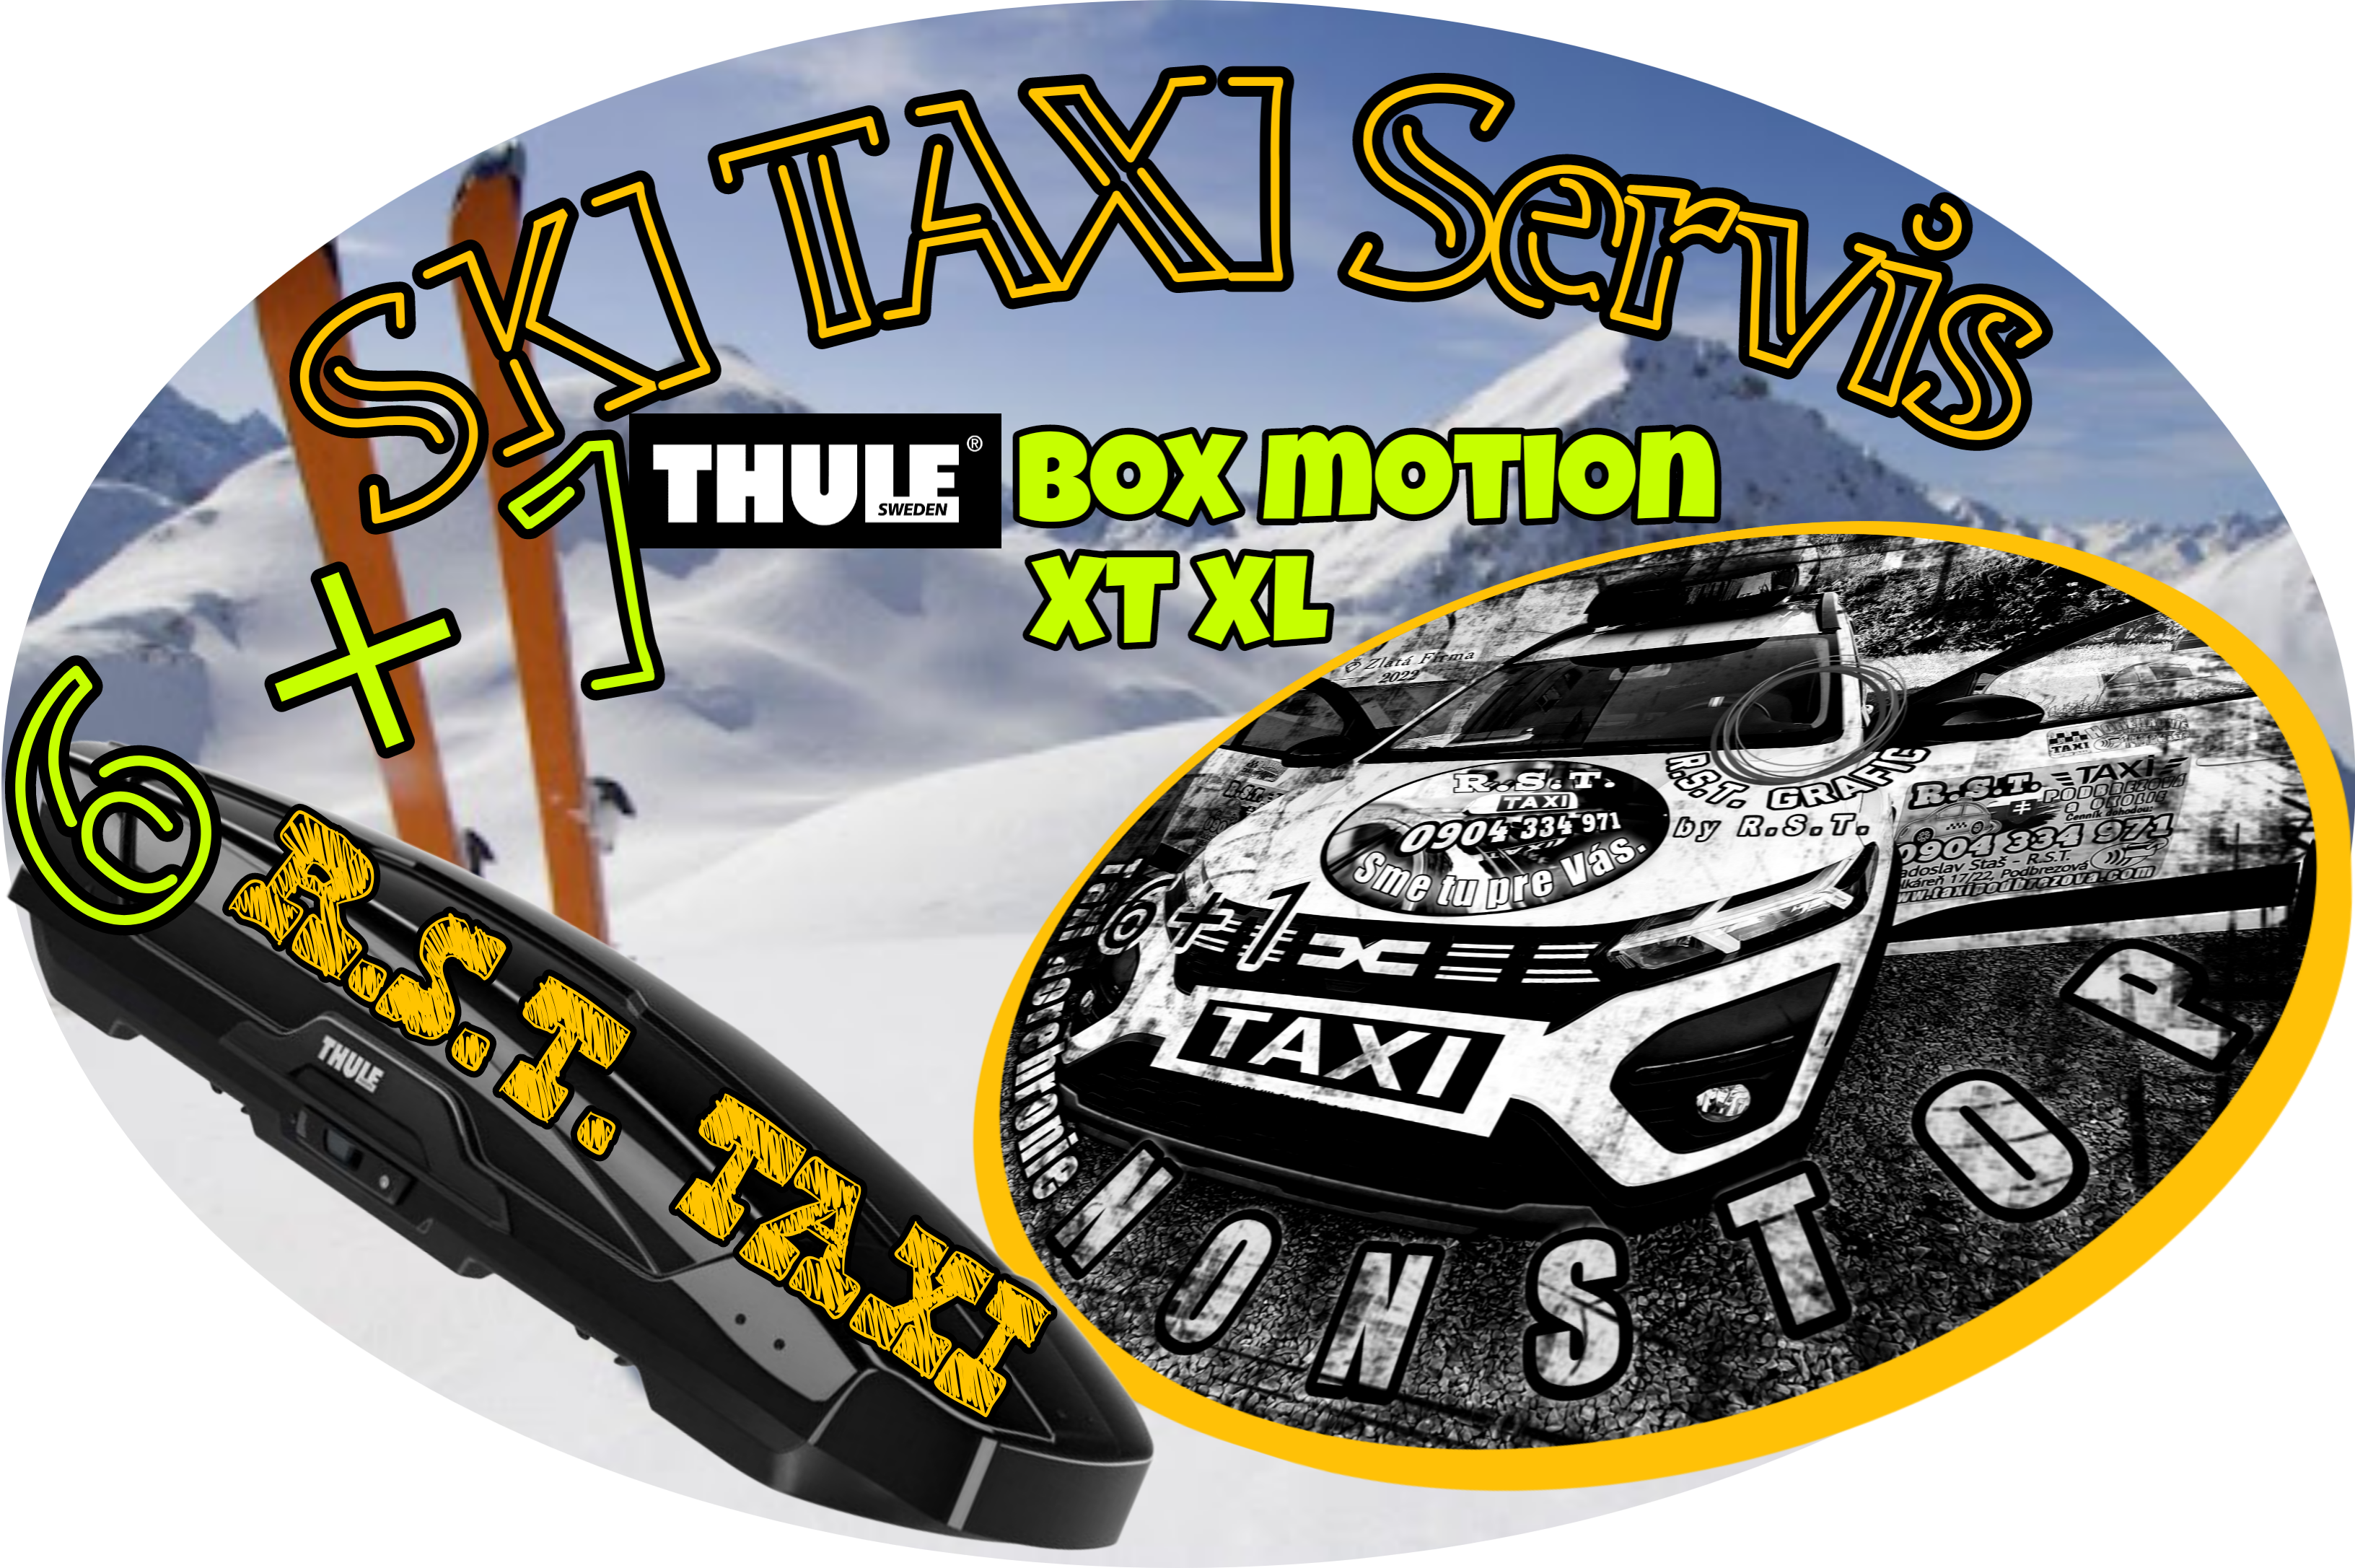 Nonstop Taxi - SKI Taxi - Podbrezová - Brezno a okolie